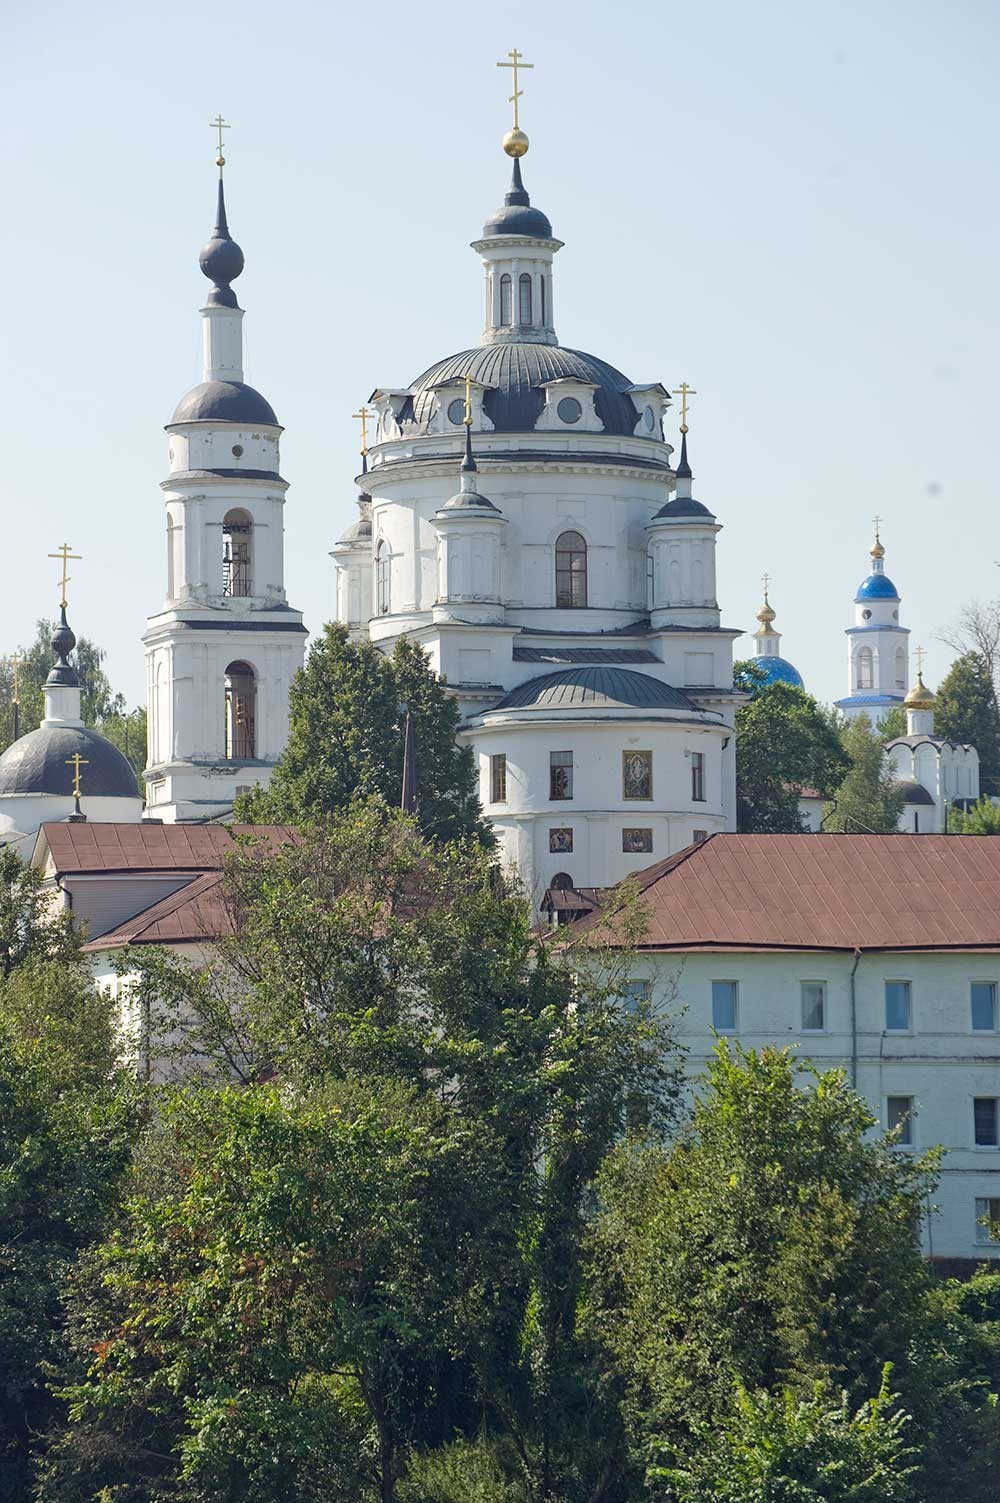 Convento de San Nicolás-Chernoostrovski, vista sureste. De izquierda a derecha: iglesia del icono “Alegría y Consuelo” de la Virgen, campanario, catedral de San Nicolás, claustro, cúpula y campanario de la catedral de Kazán, iglesia del Arcángel Miguel (construida en 2012). 7 de agosto de 2016.